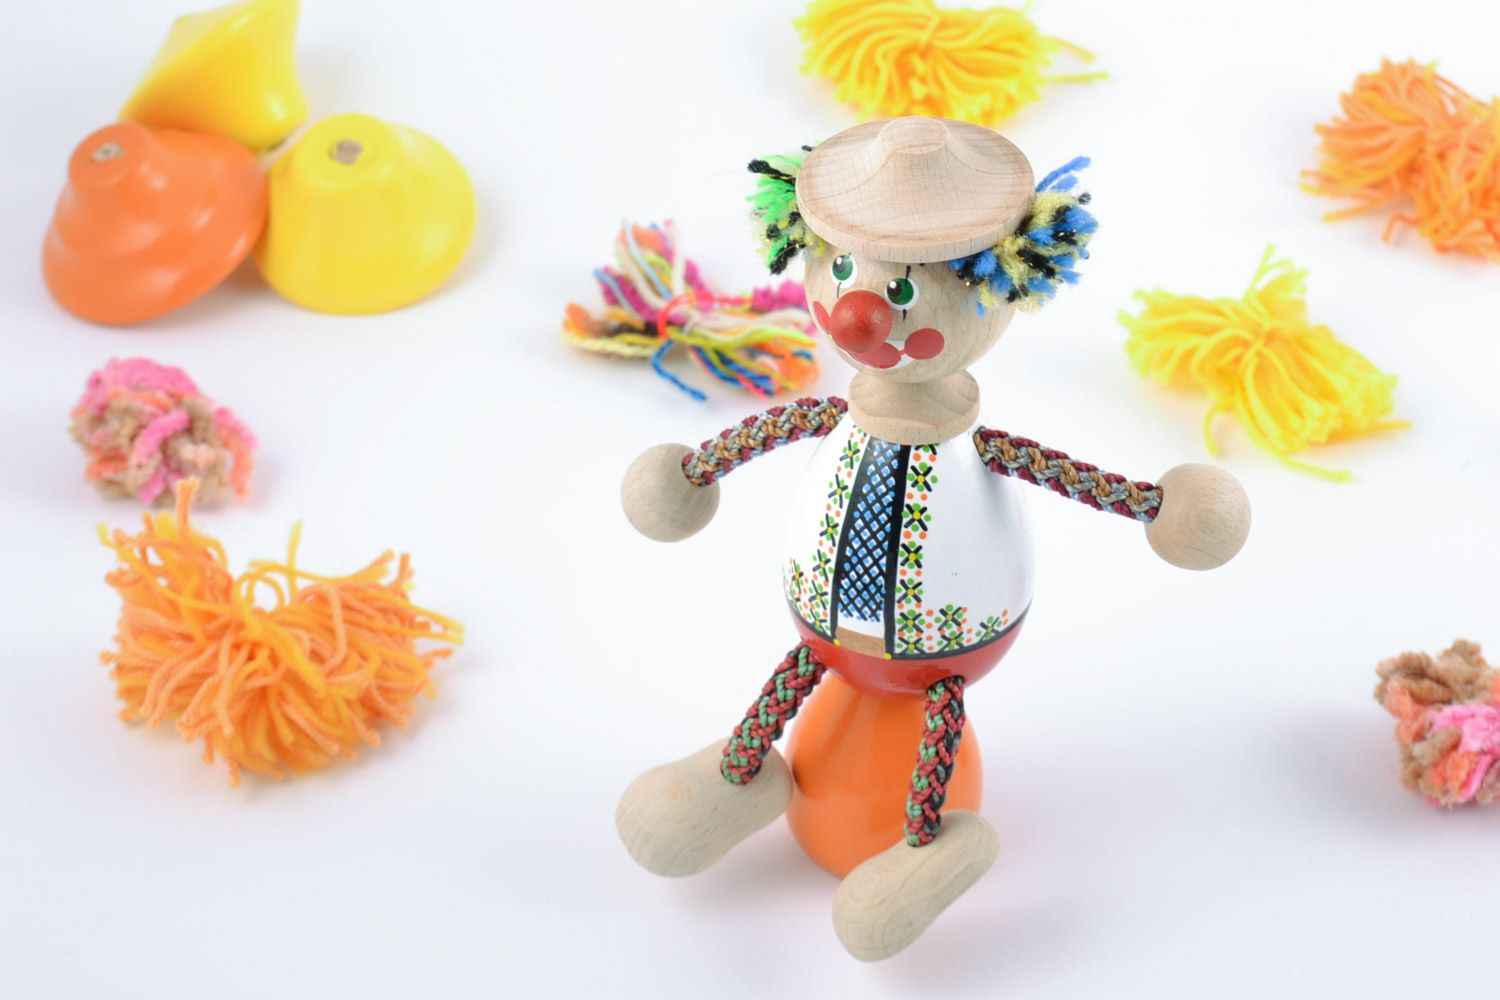 Детская игрушка из дерева расписанная красками ручной работы в виде яркого клоуна фото 1